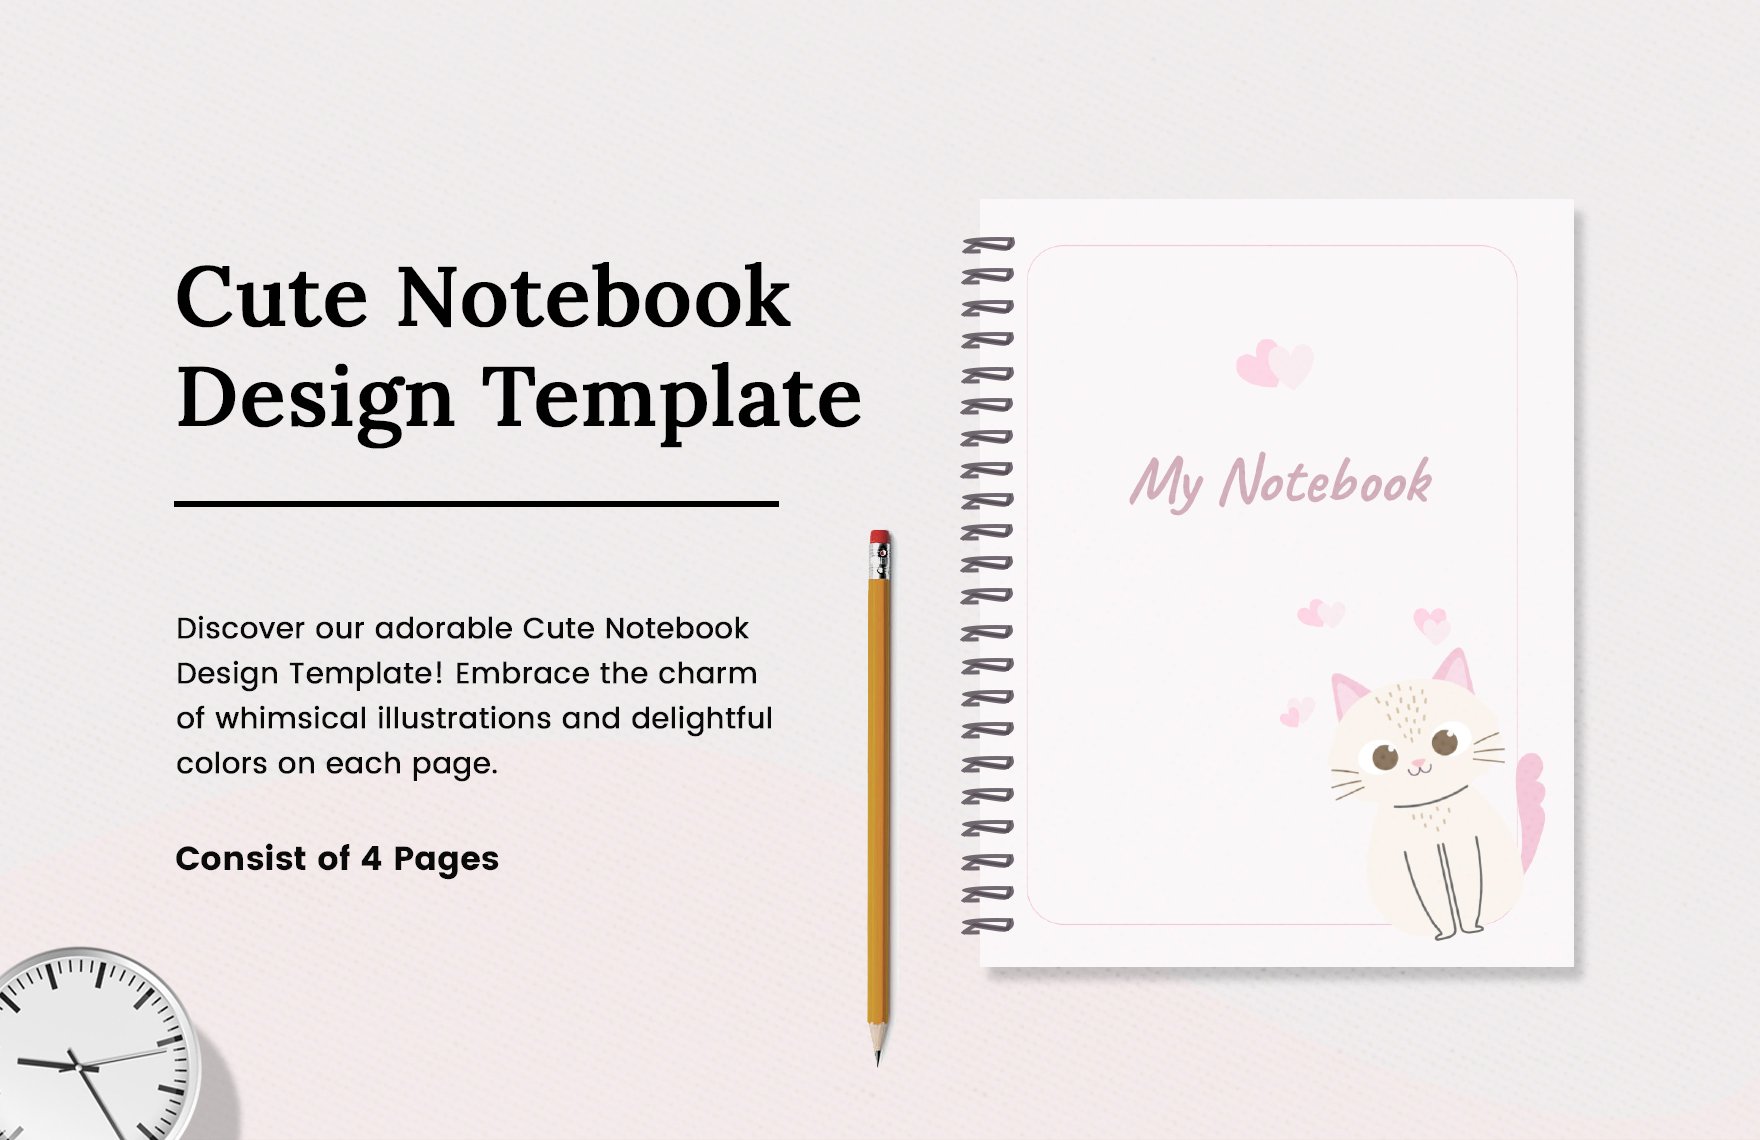 Cute Notebook Design Template in Word, Google Docs, PDF